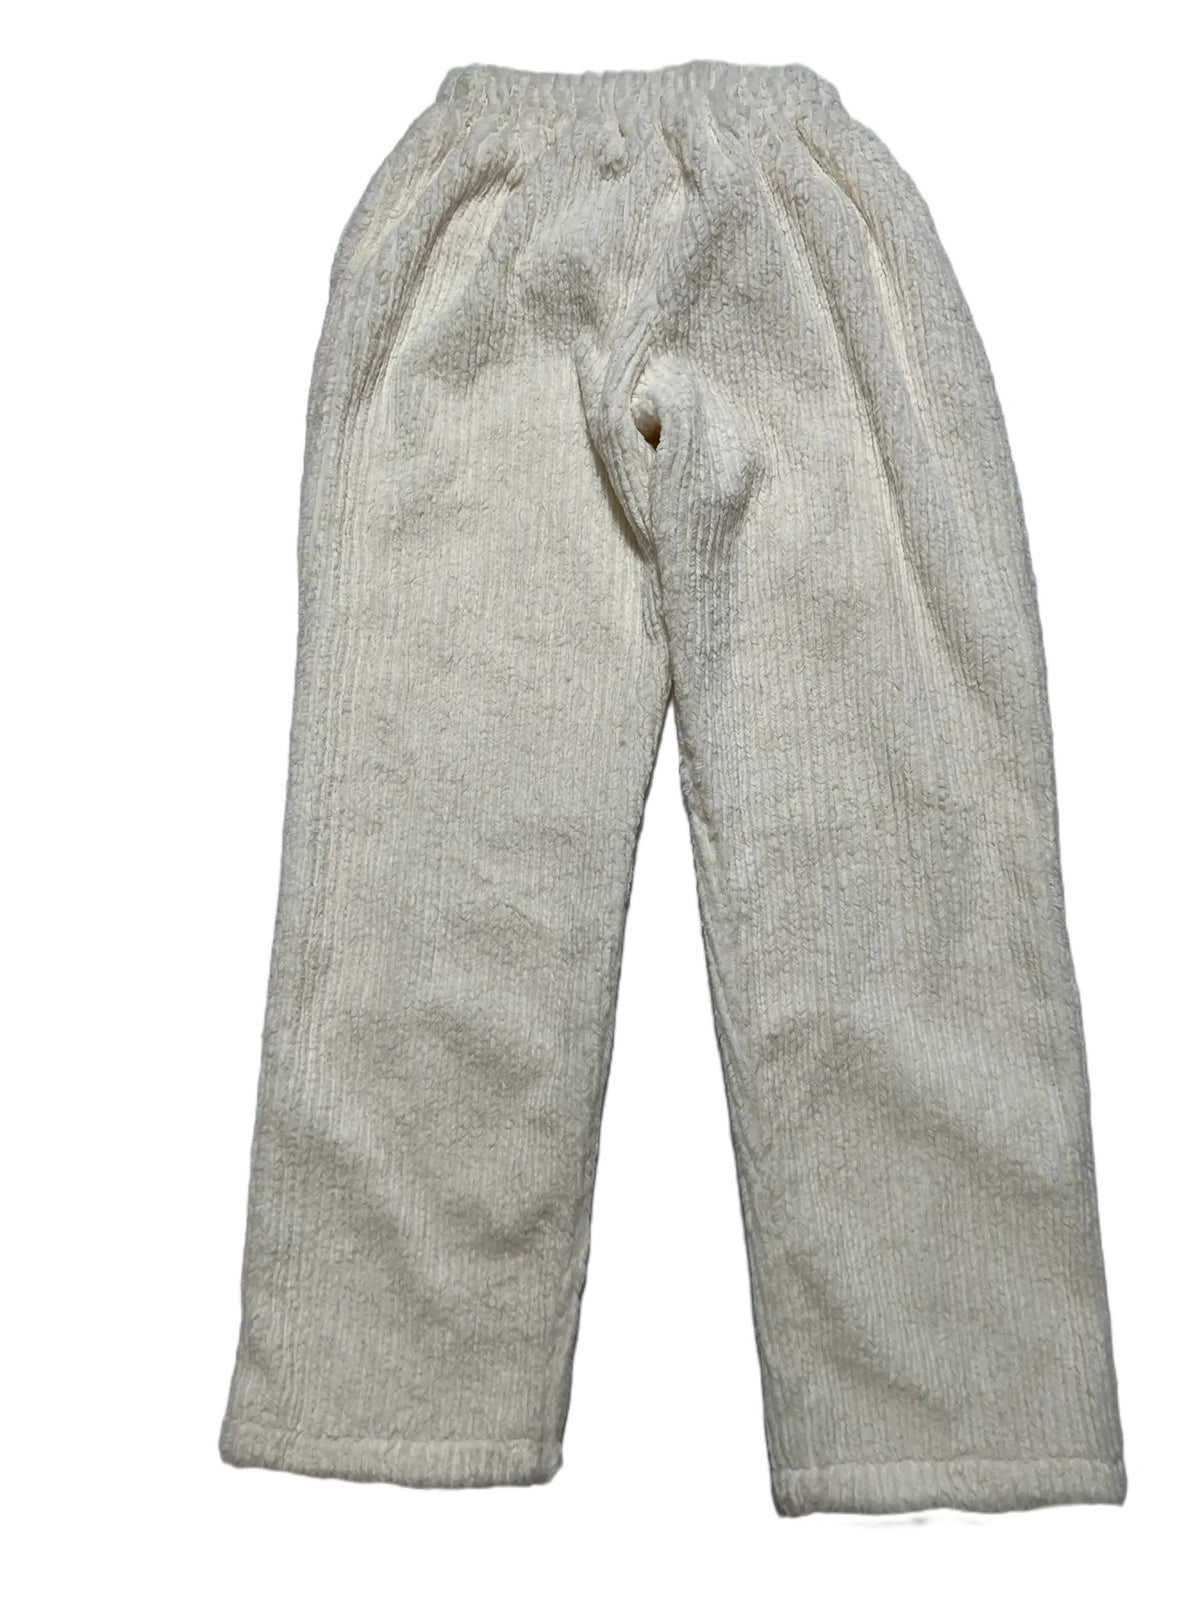 Gateless- White Fuzzy Pants